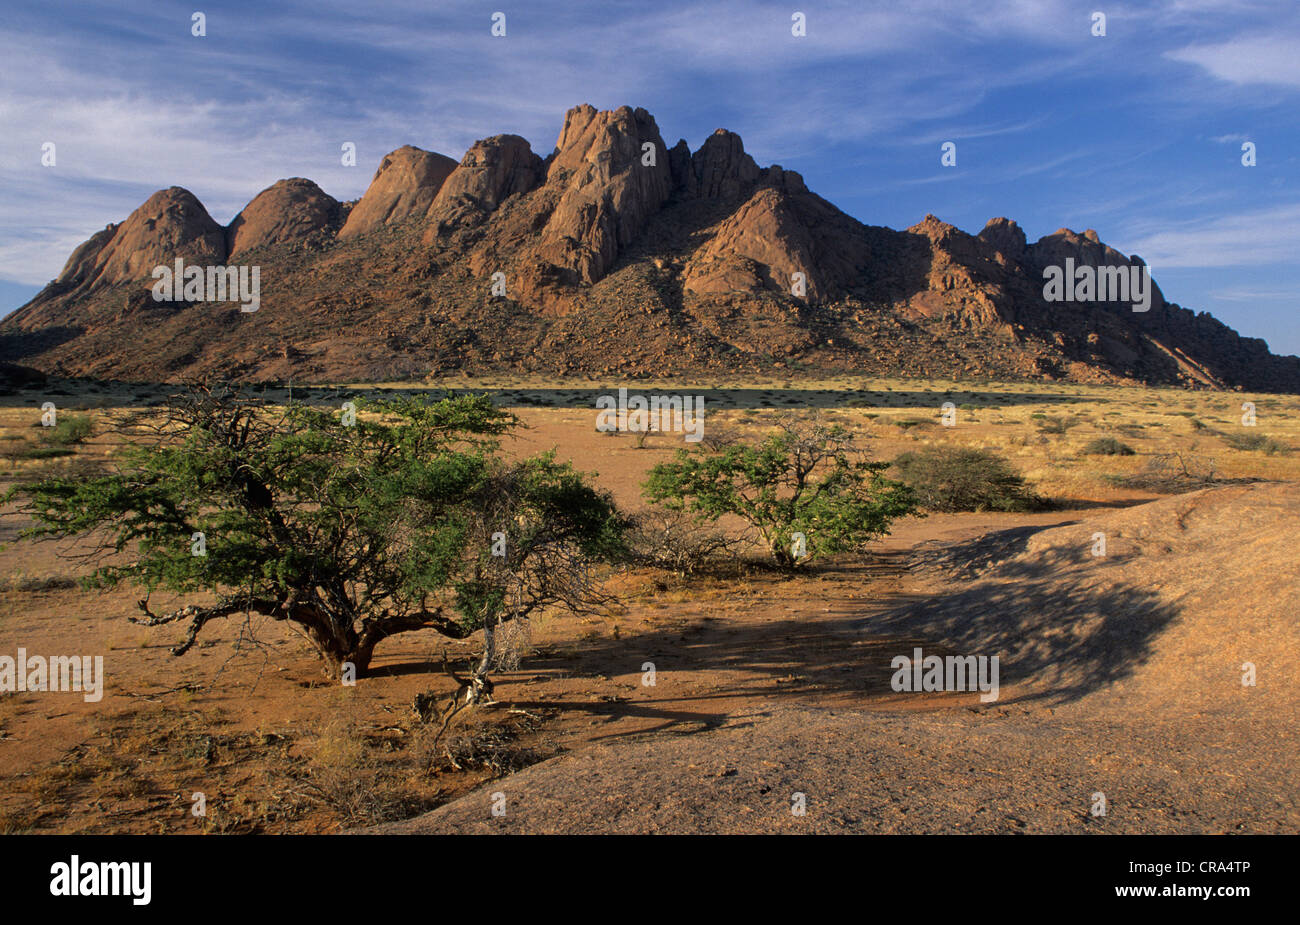 Spitzkoppe montaña, desierto de Namib, Namibia, africa Foto de stock